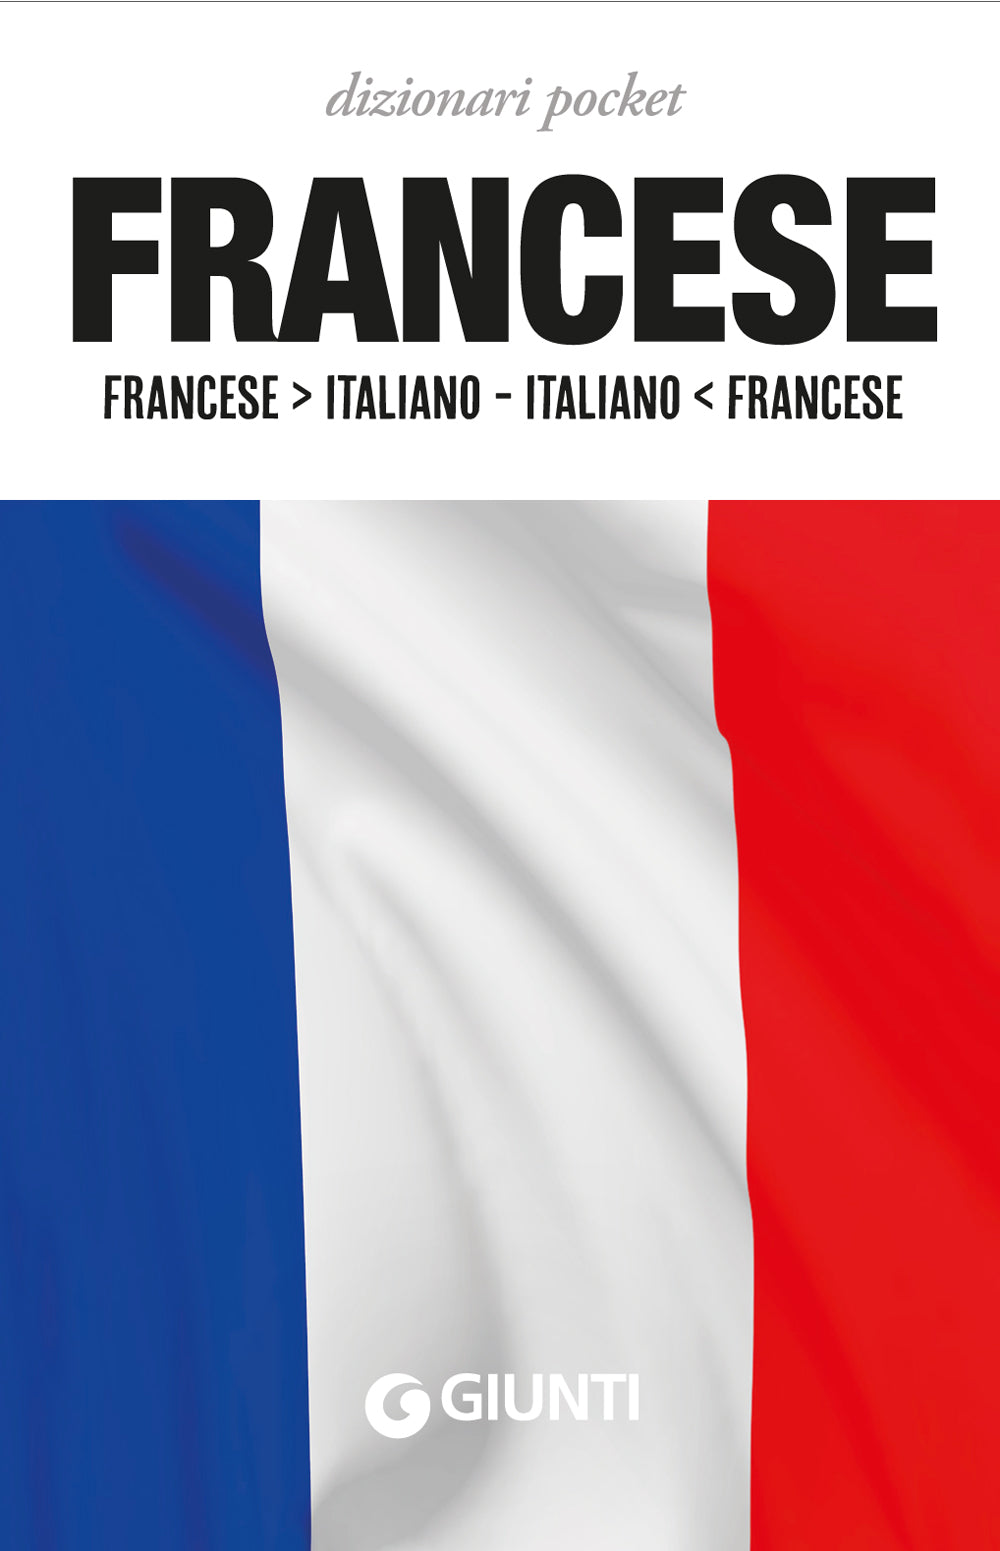 Dizionario francese. Francese-italiano, italiano-francese. Ediz. bilingue:  9788874936151 - AbeBooks